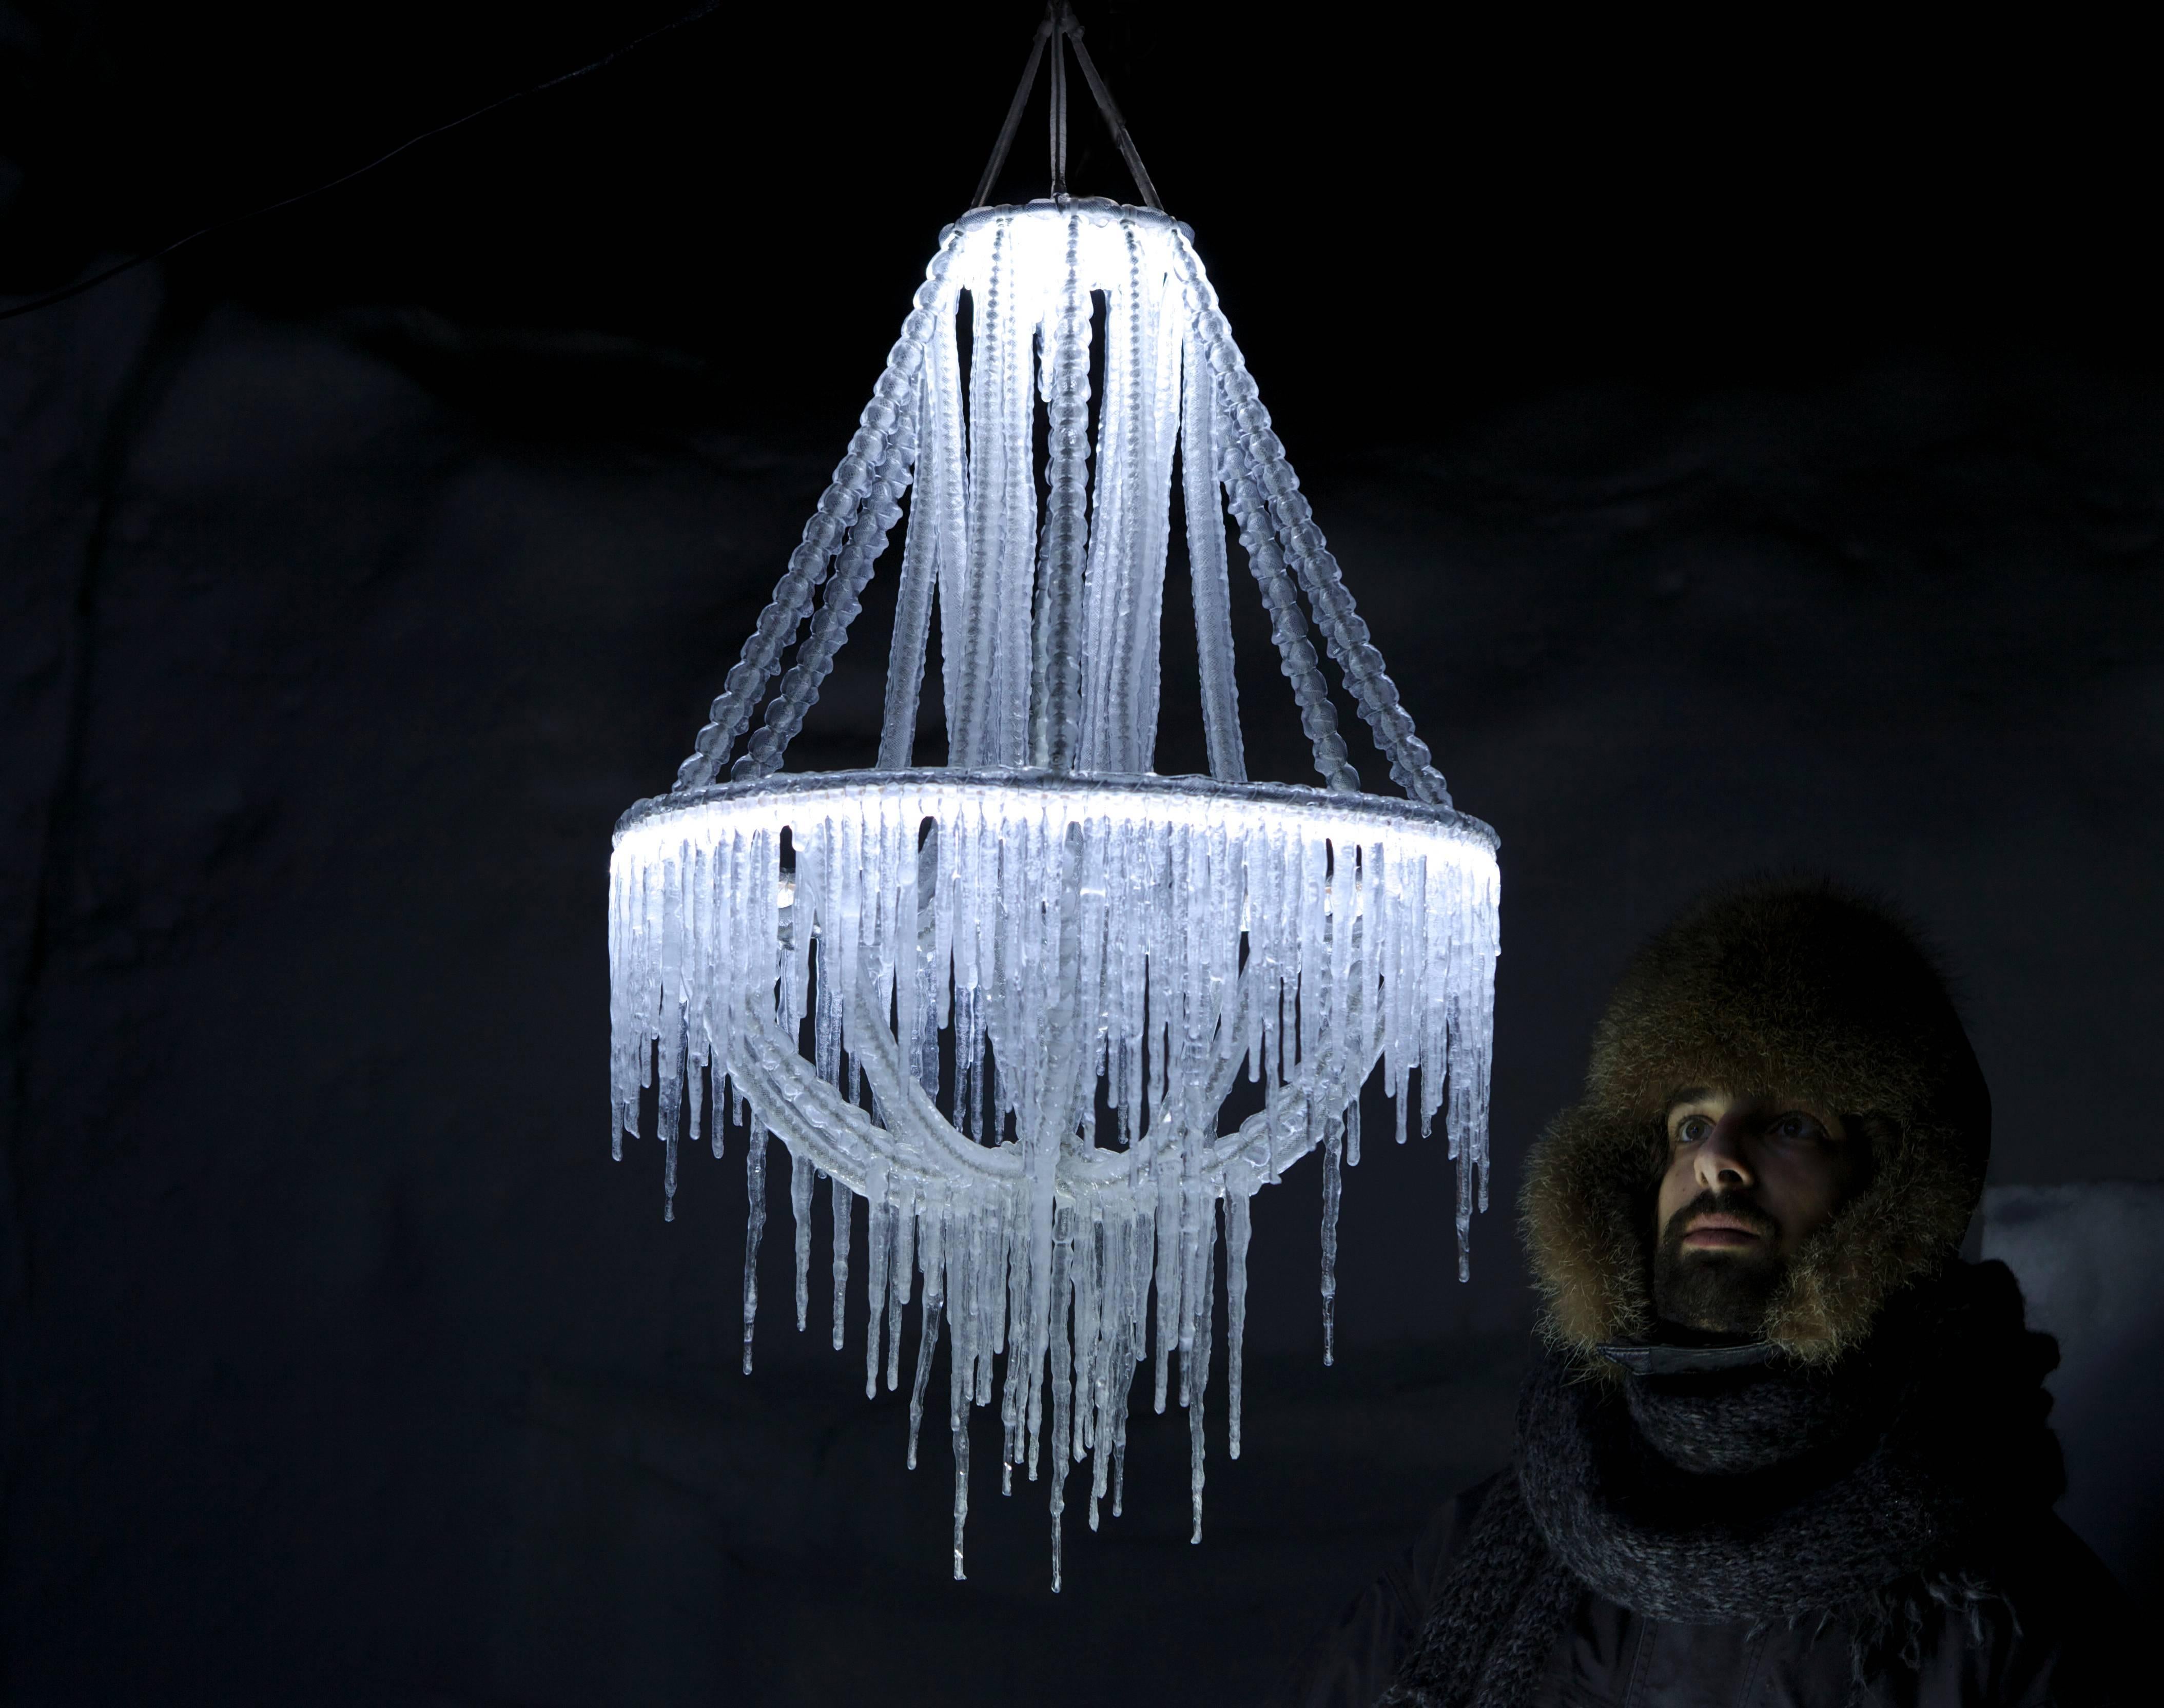 Polar Light d'Arturo Erbsman (Land Art Design, Made in Lapland )
Dimensions : 50 x 50 x 100 cm
Matériaux : Fil métallique, chaîne, maille, eau 

Arturo Erbsman vient lui-même installer la lumière polaire. Il doit être dans une température de -7°C